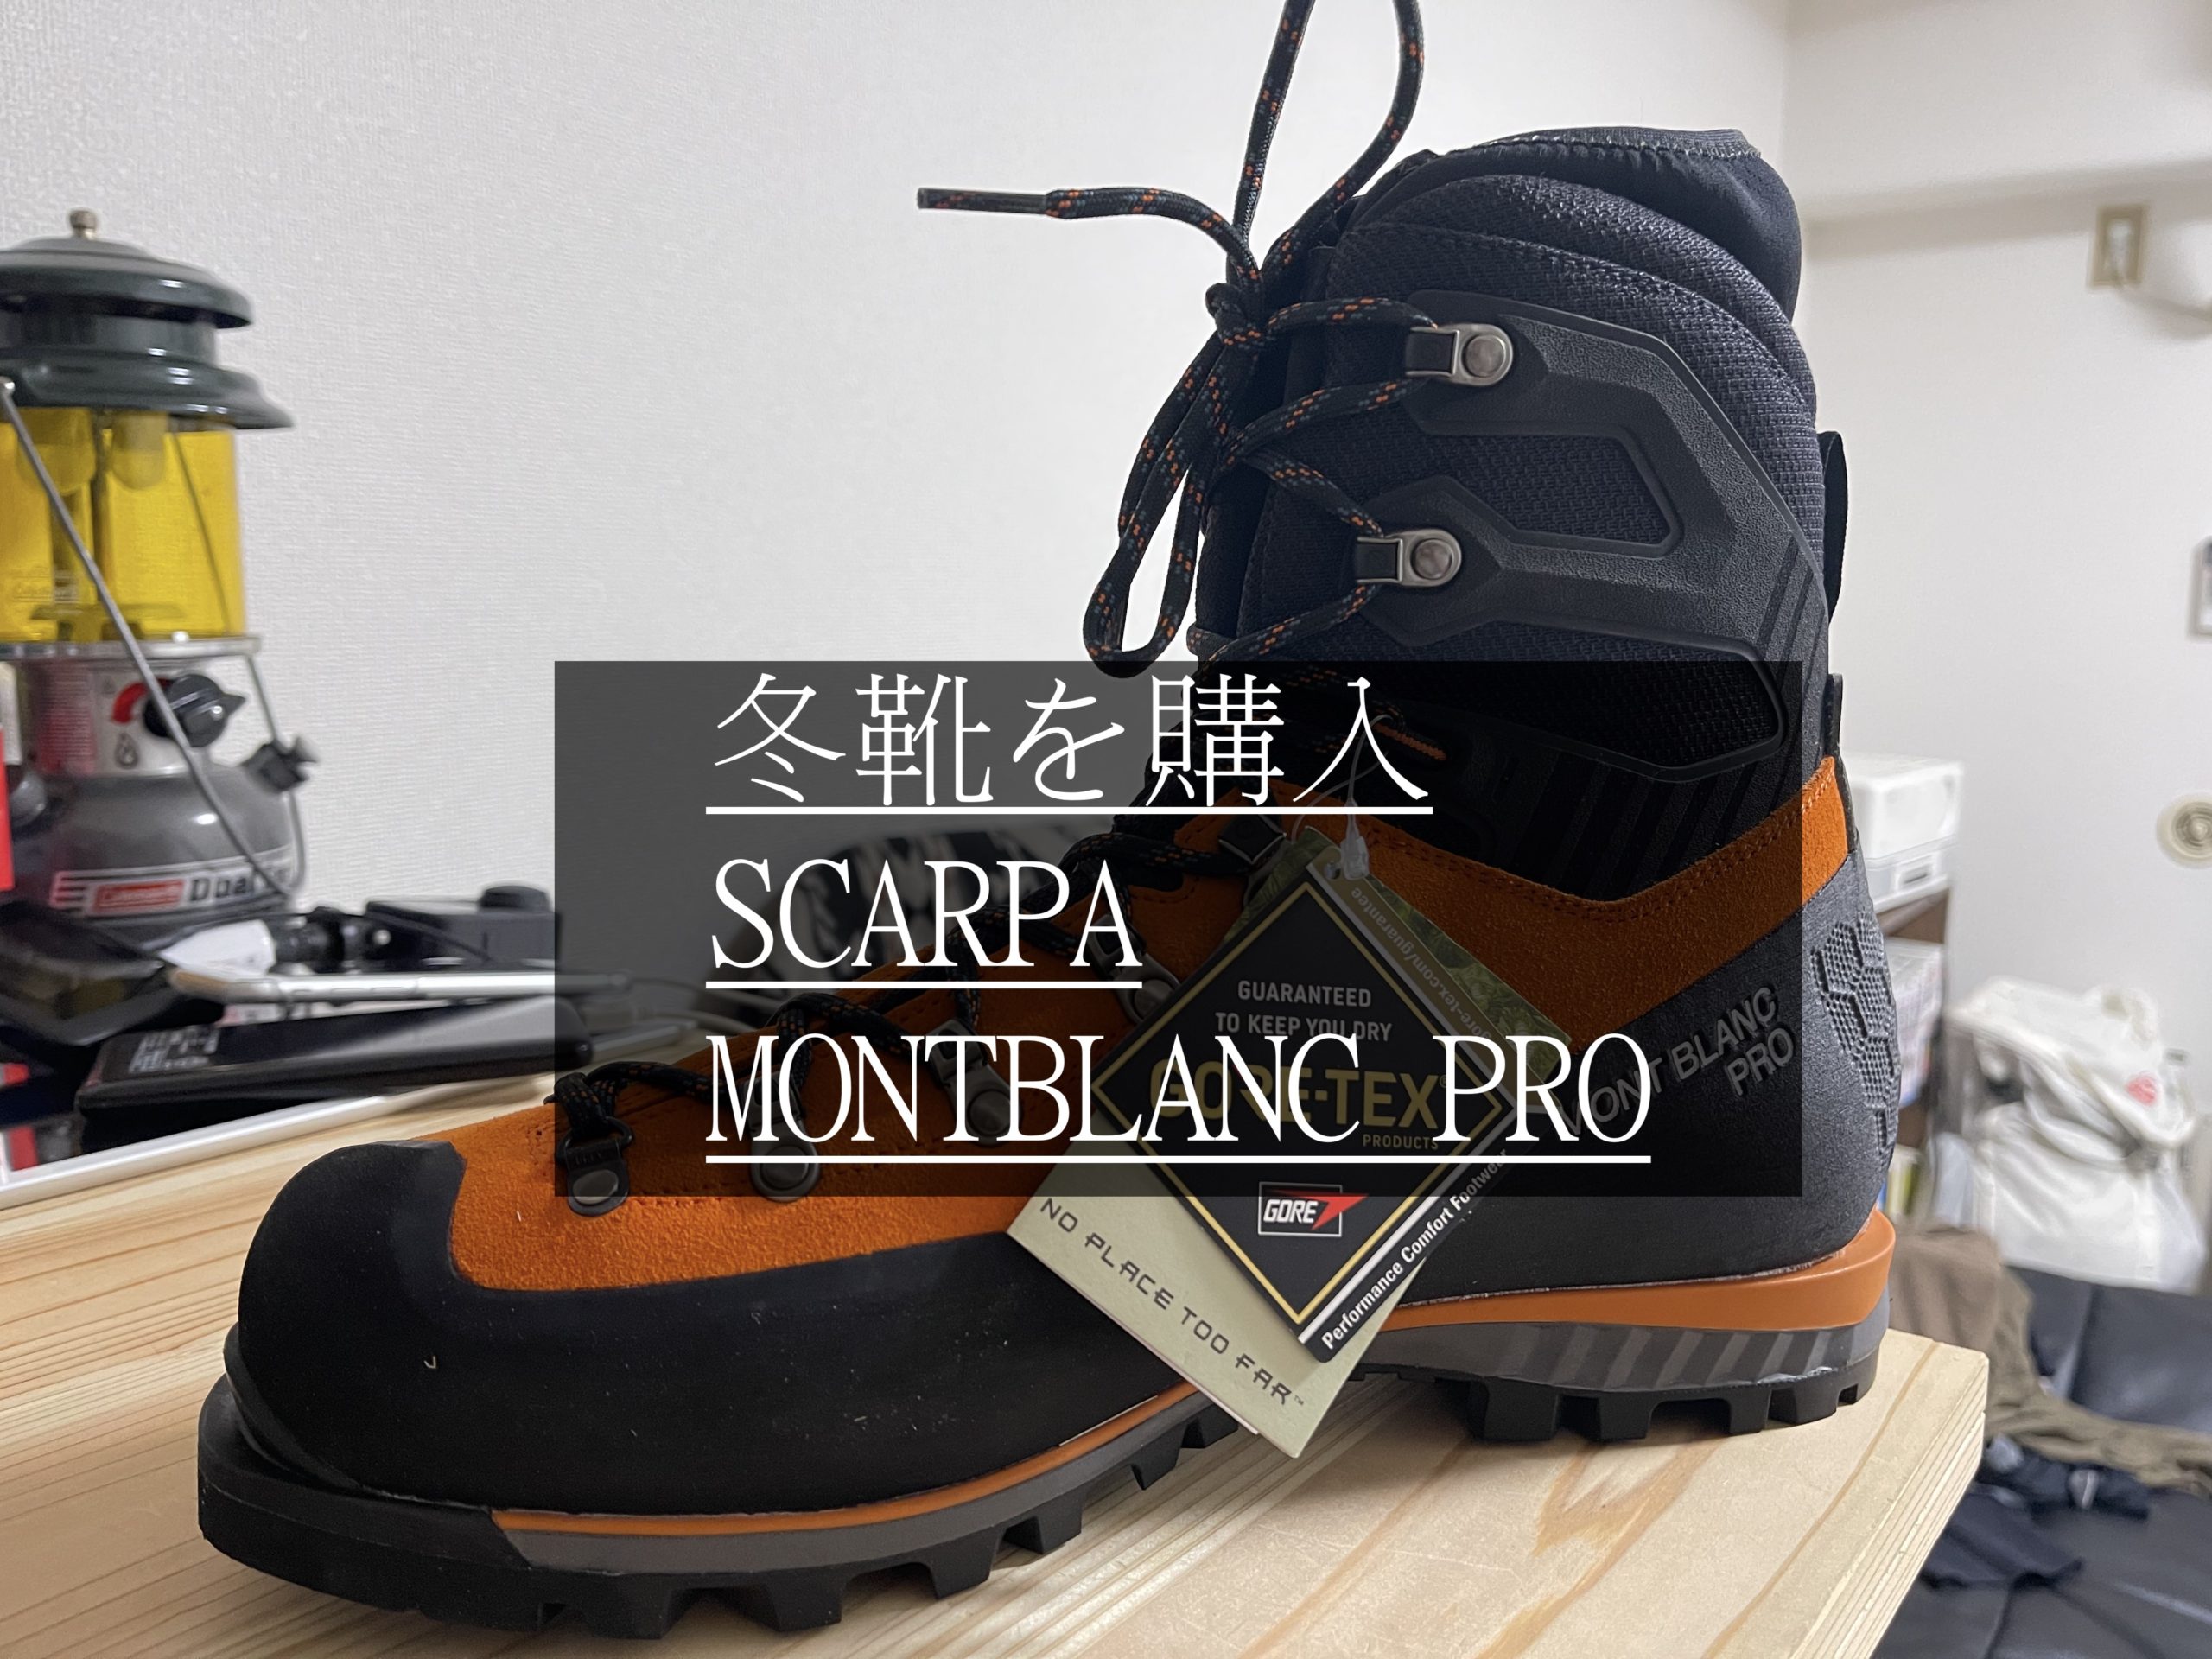 新しく購入した冬靴「スカルパ/モンブランプロGTX」 - NAOton HIKER BLOG